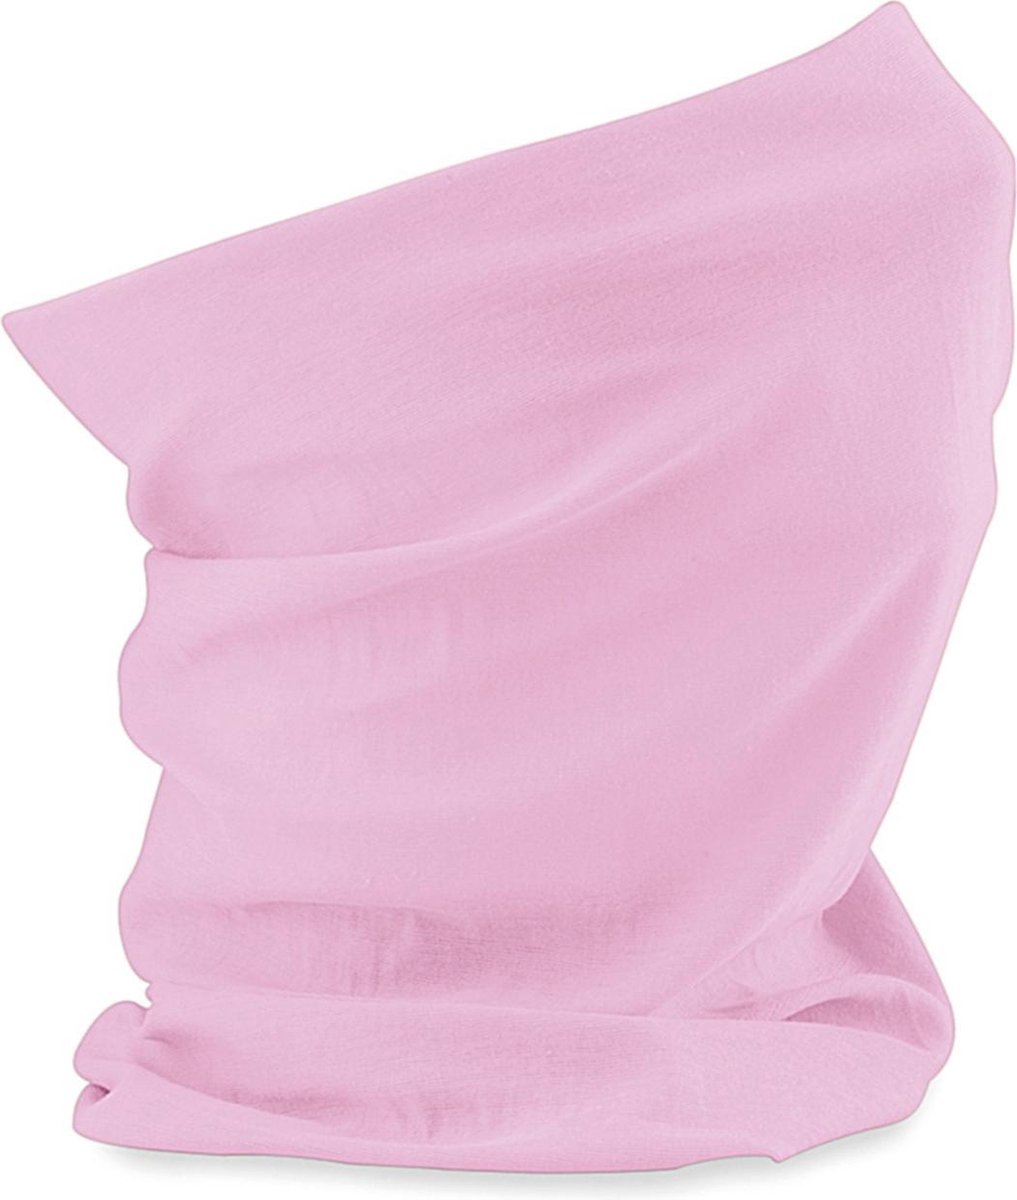 Multifunctionele morf sjaal roze unikleur - Voor kinderen - Gezichts bedekkers - Maskers voor mond - Windvangers - Gezichtsmasker